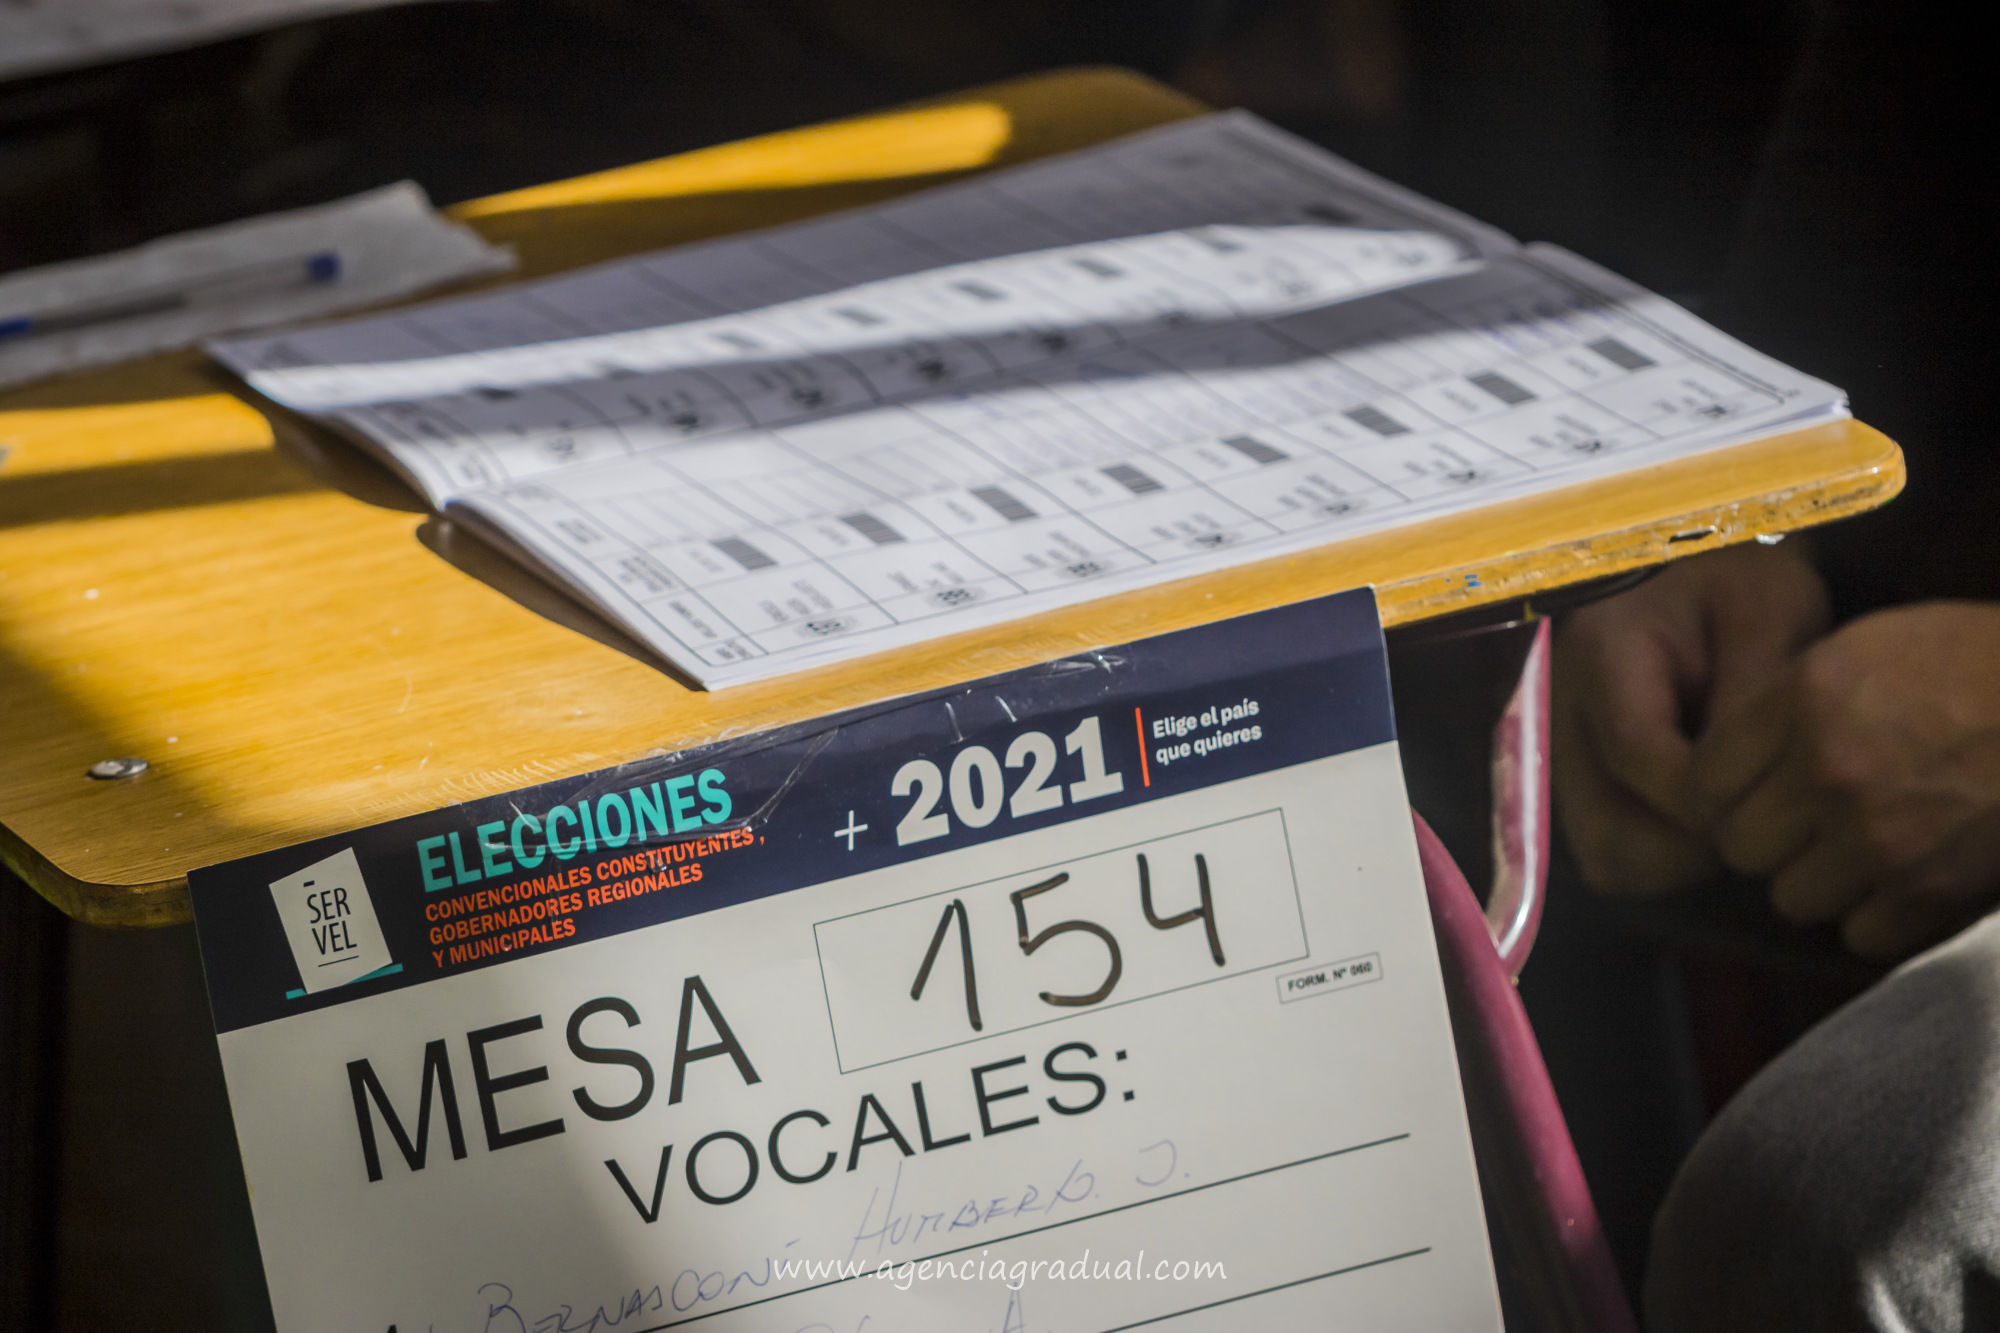 Agencia Gradual - elecciones-2021-votaciones-131.jpg